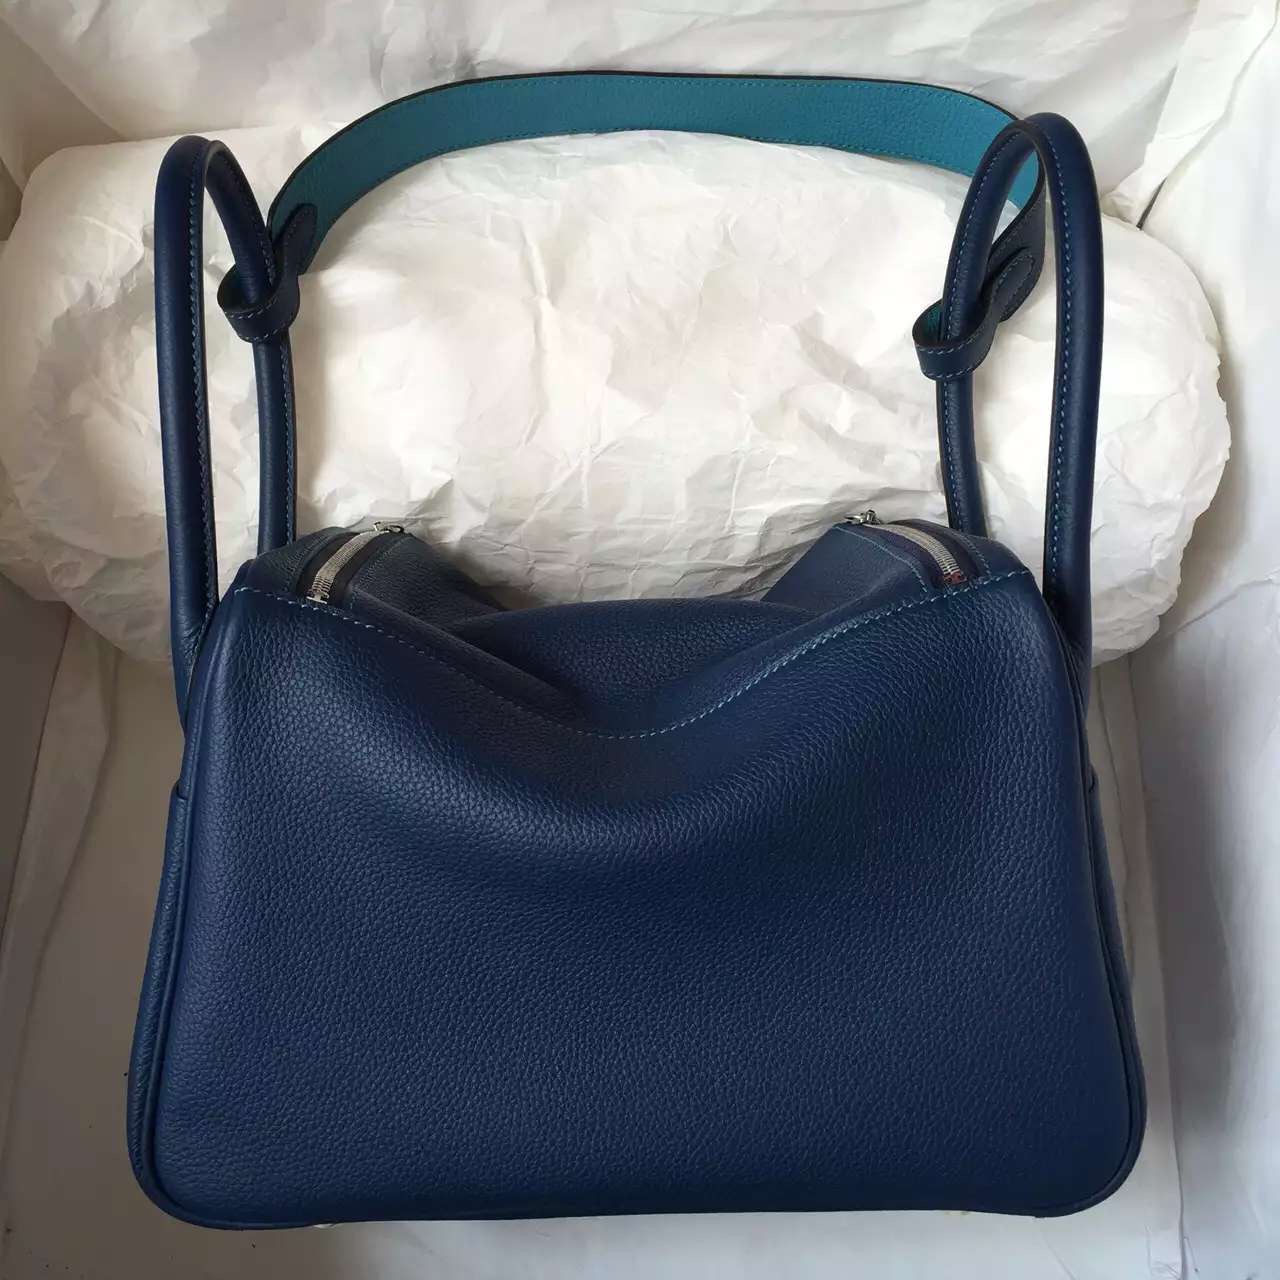 7K Blue Saphir &#038; 7B Turquoise Blue Togo Leather Hermes Lindy Bag 26CM Silver Hardware